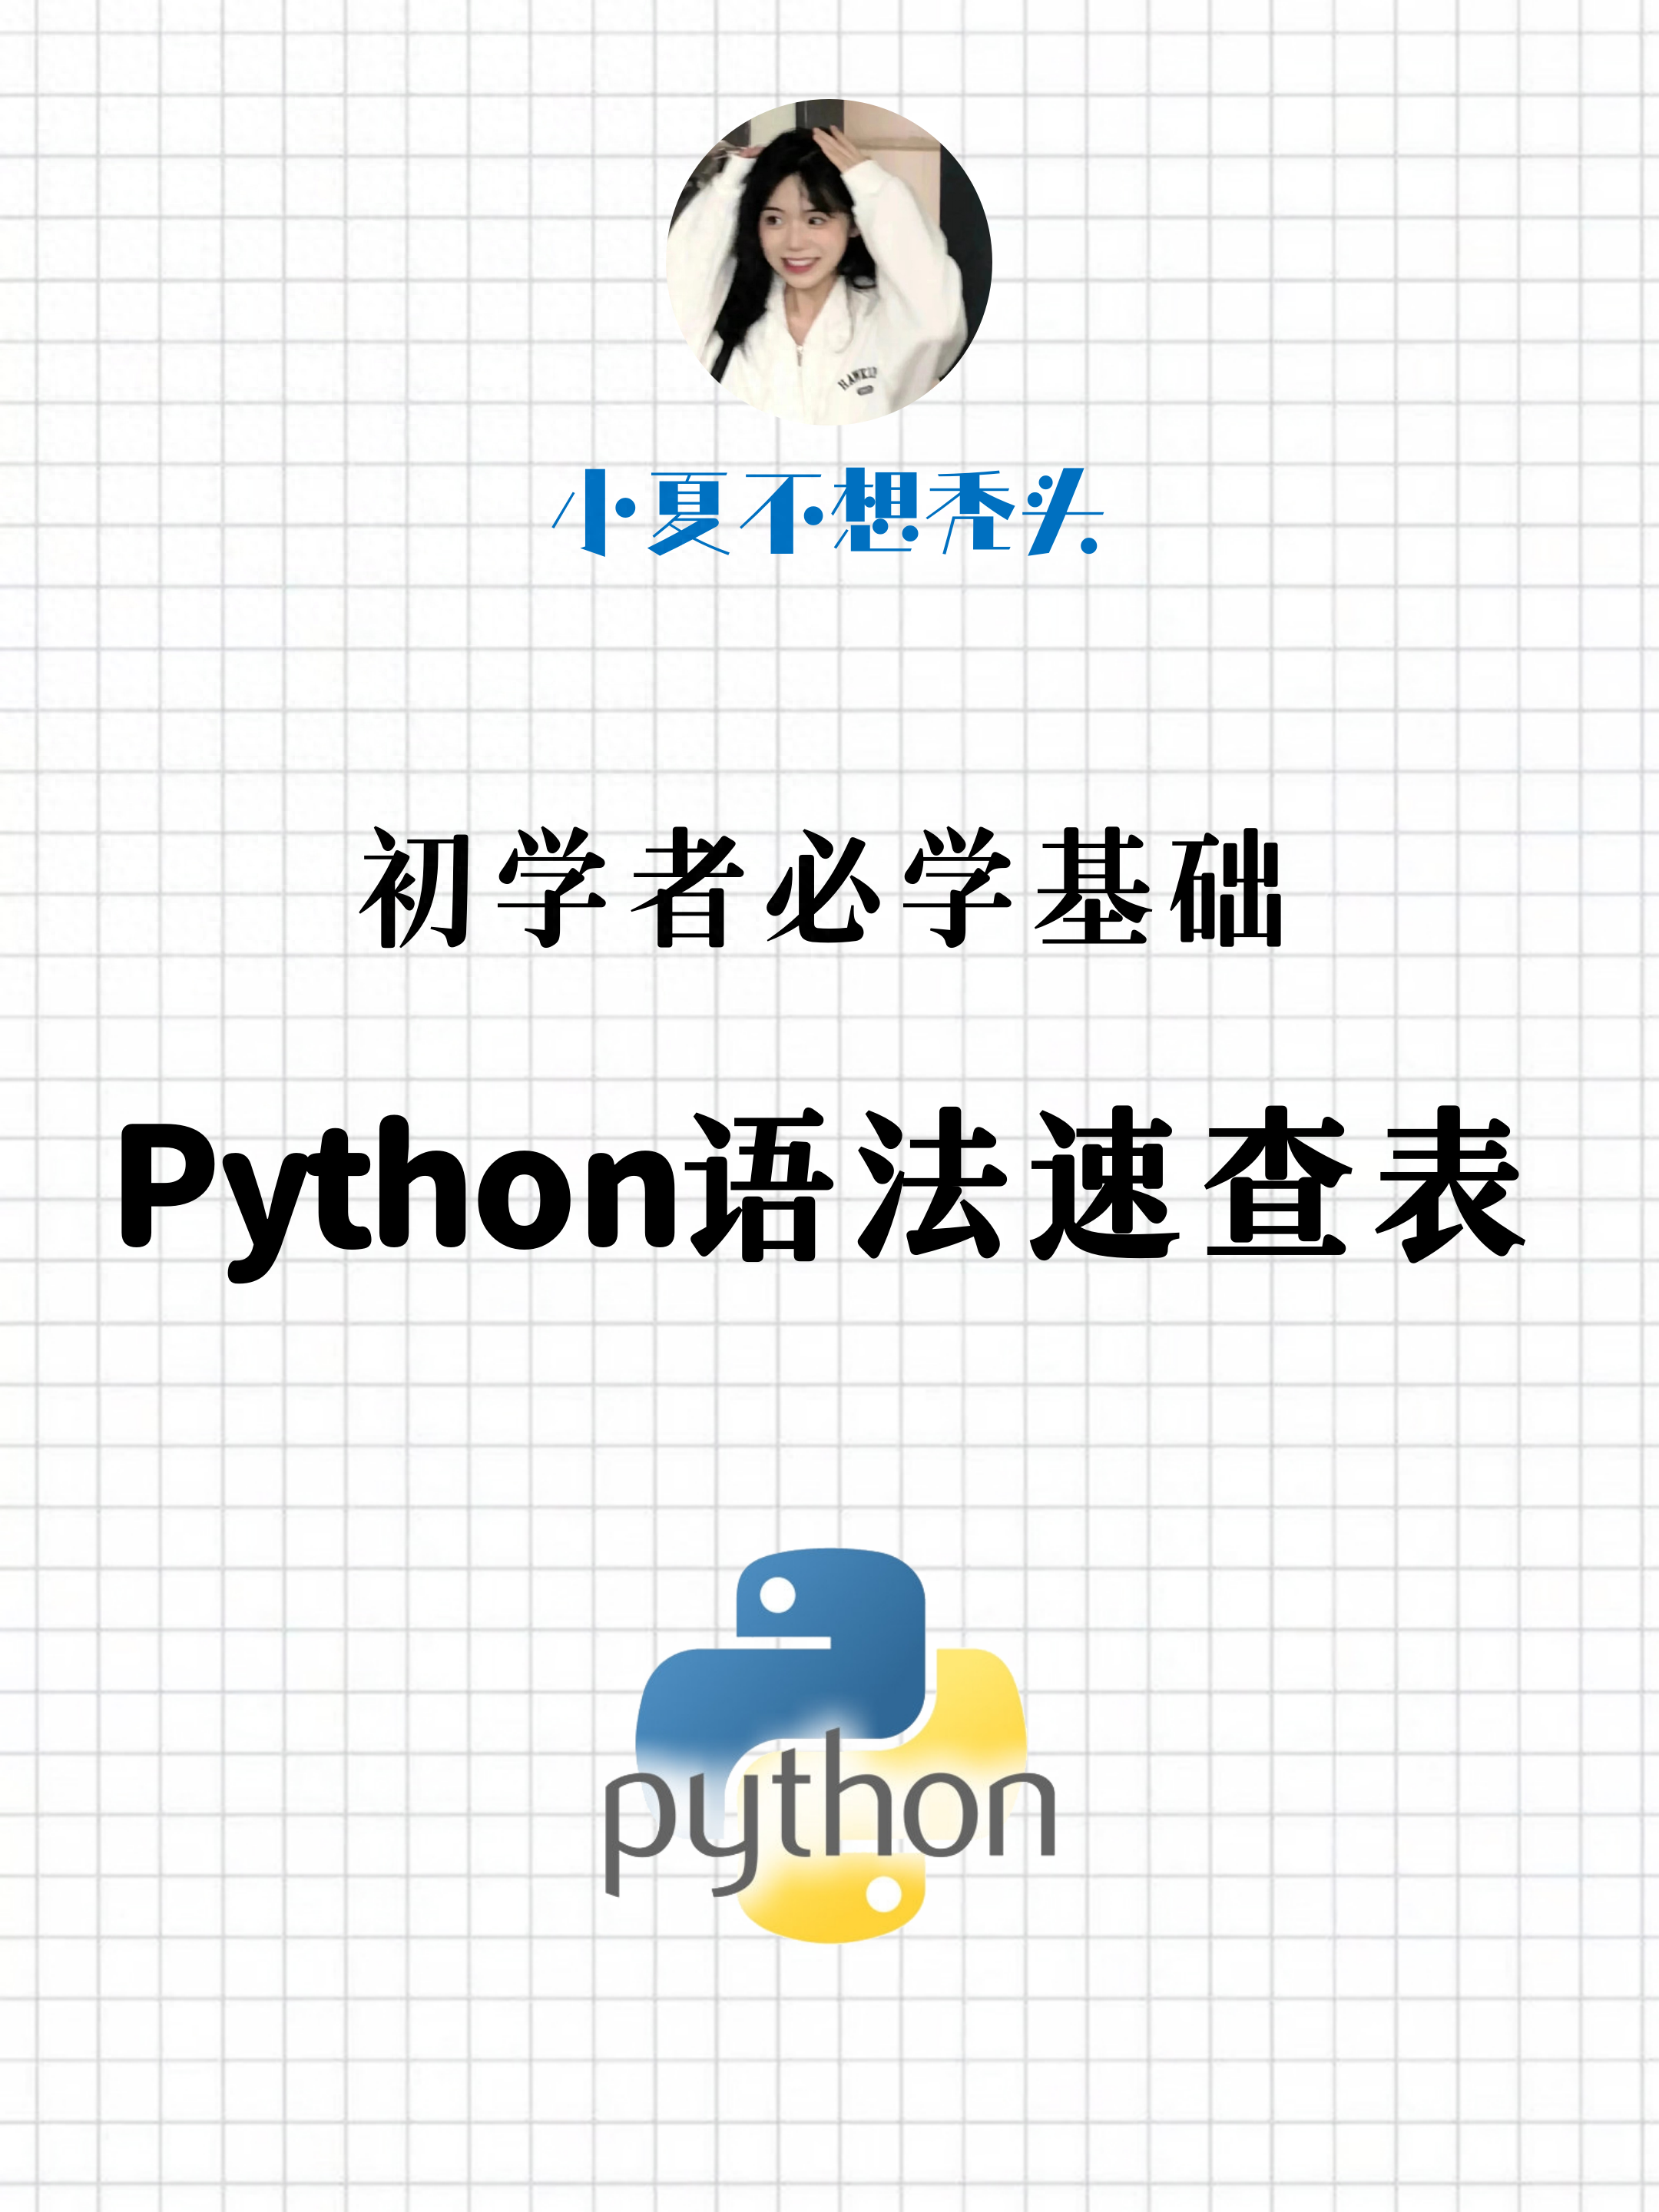 1分钟看完Python所有函数用法！